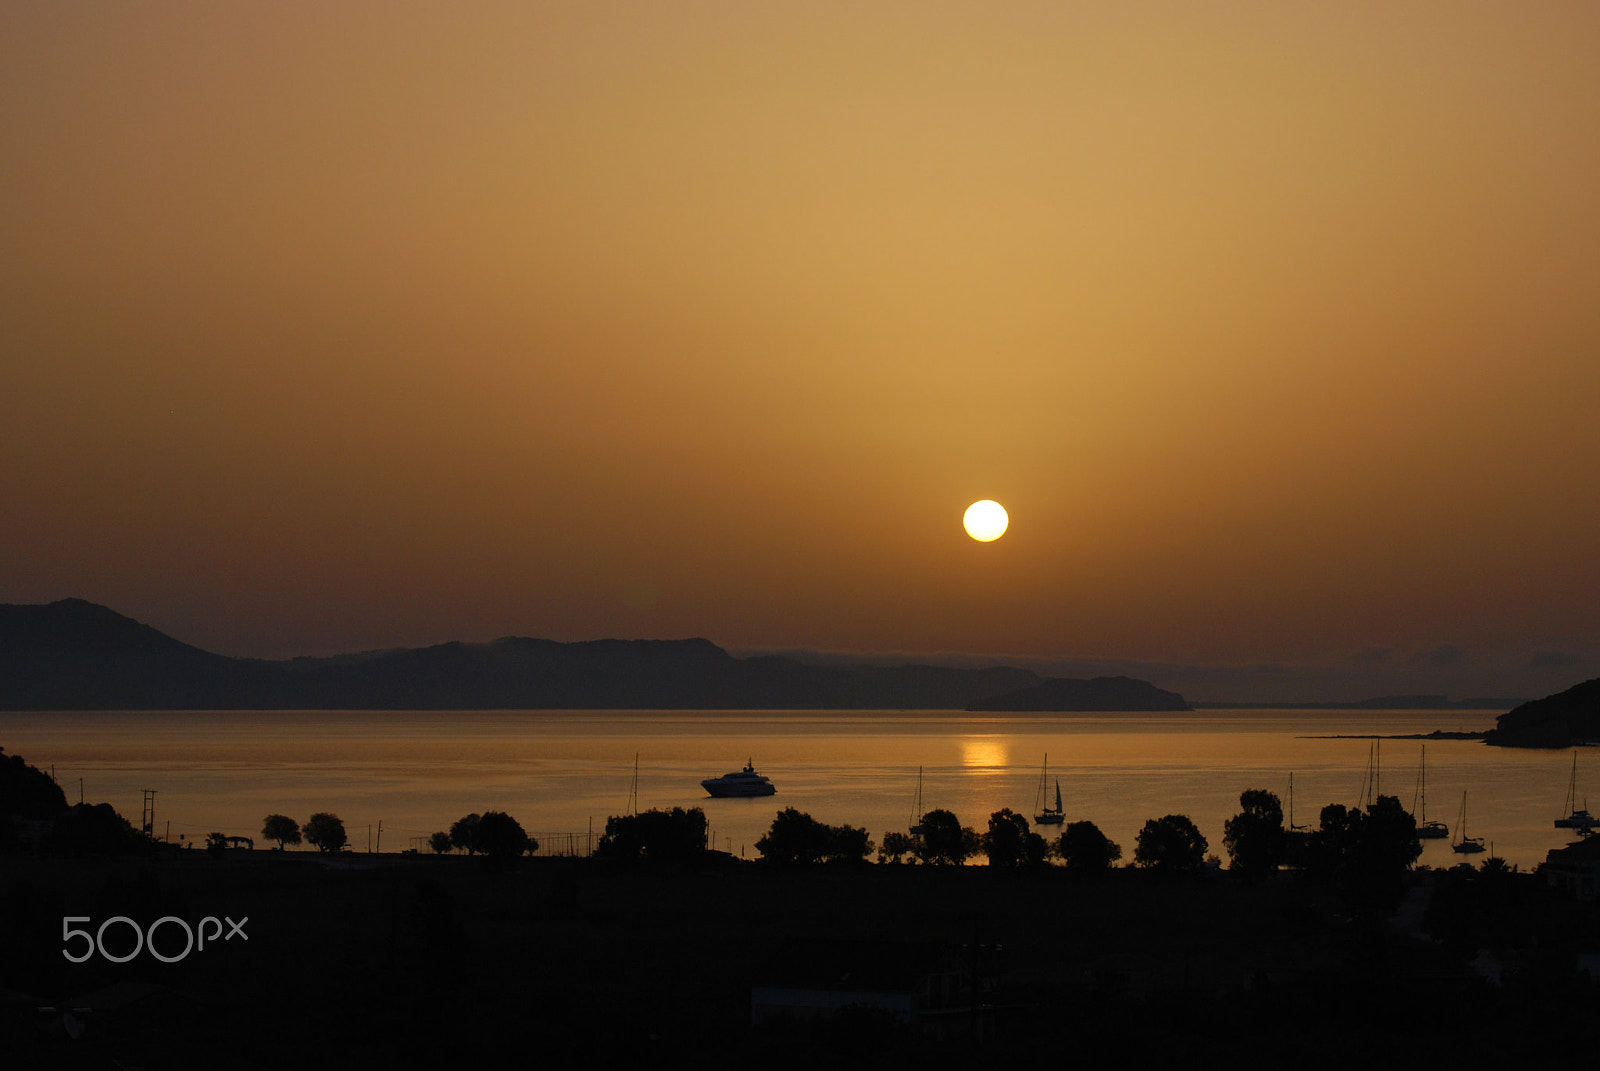 Nikon D80 + AF Zoom-Nikkor 28-70mm f/3.5-4.5D sample photo. Warm greek sunset photography